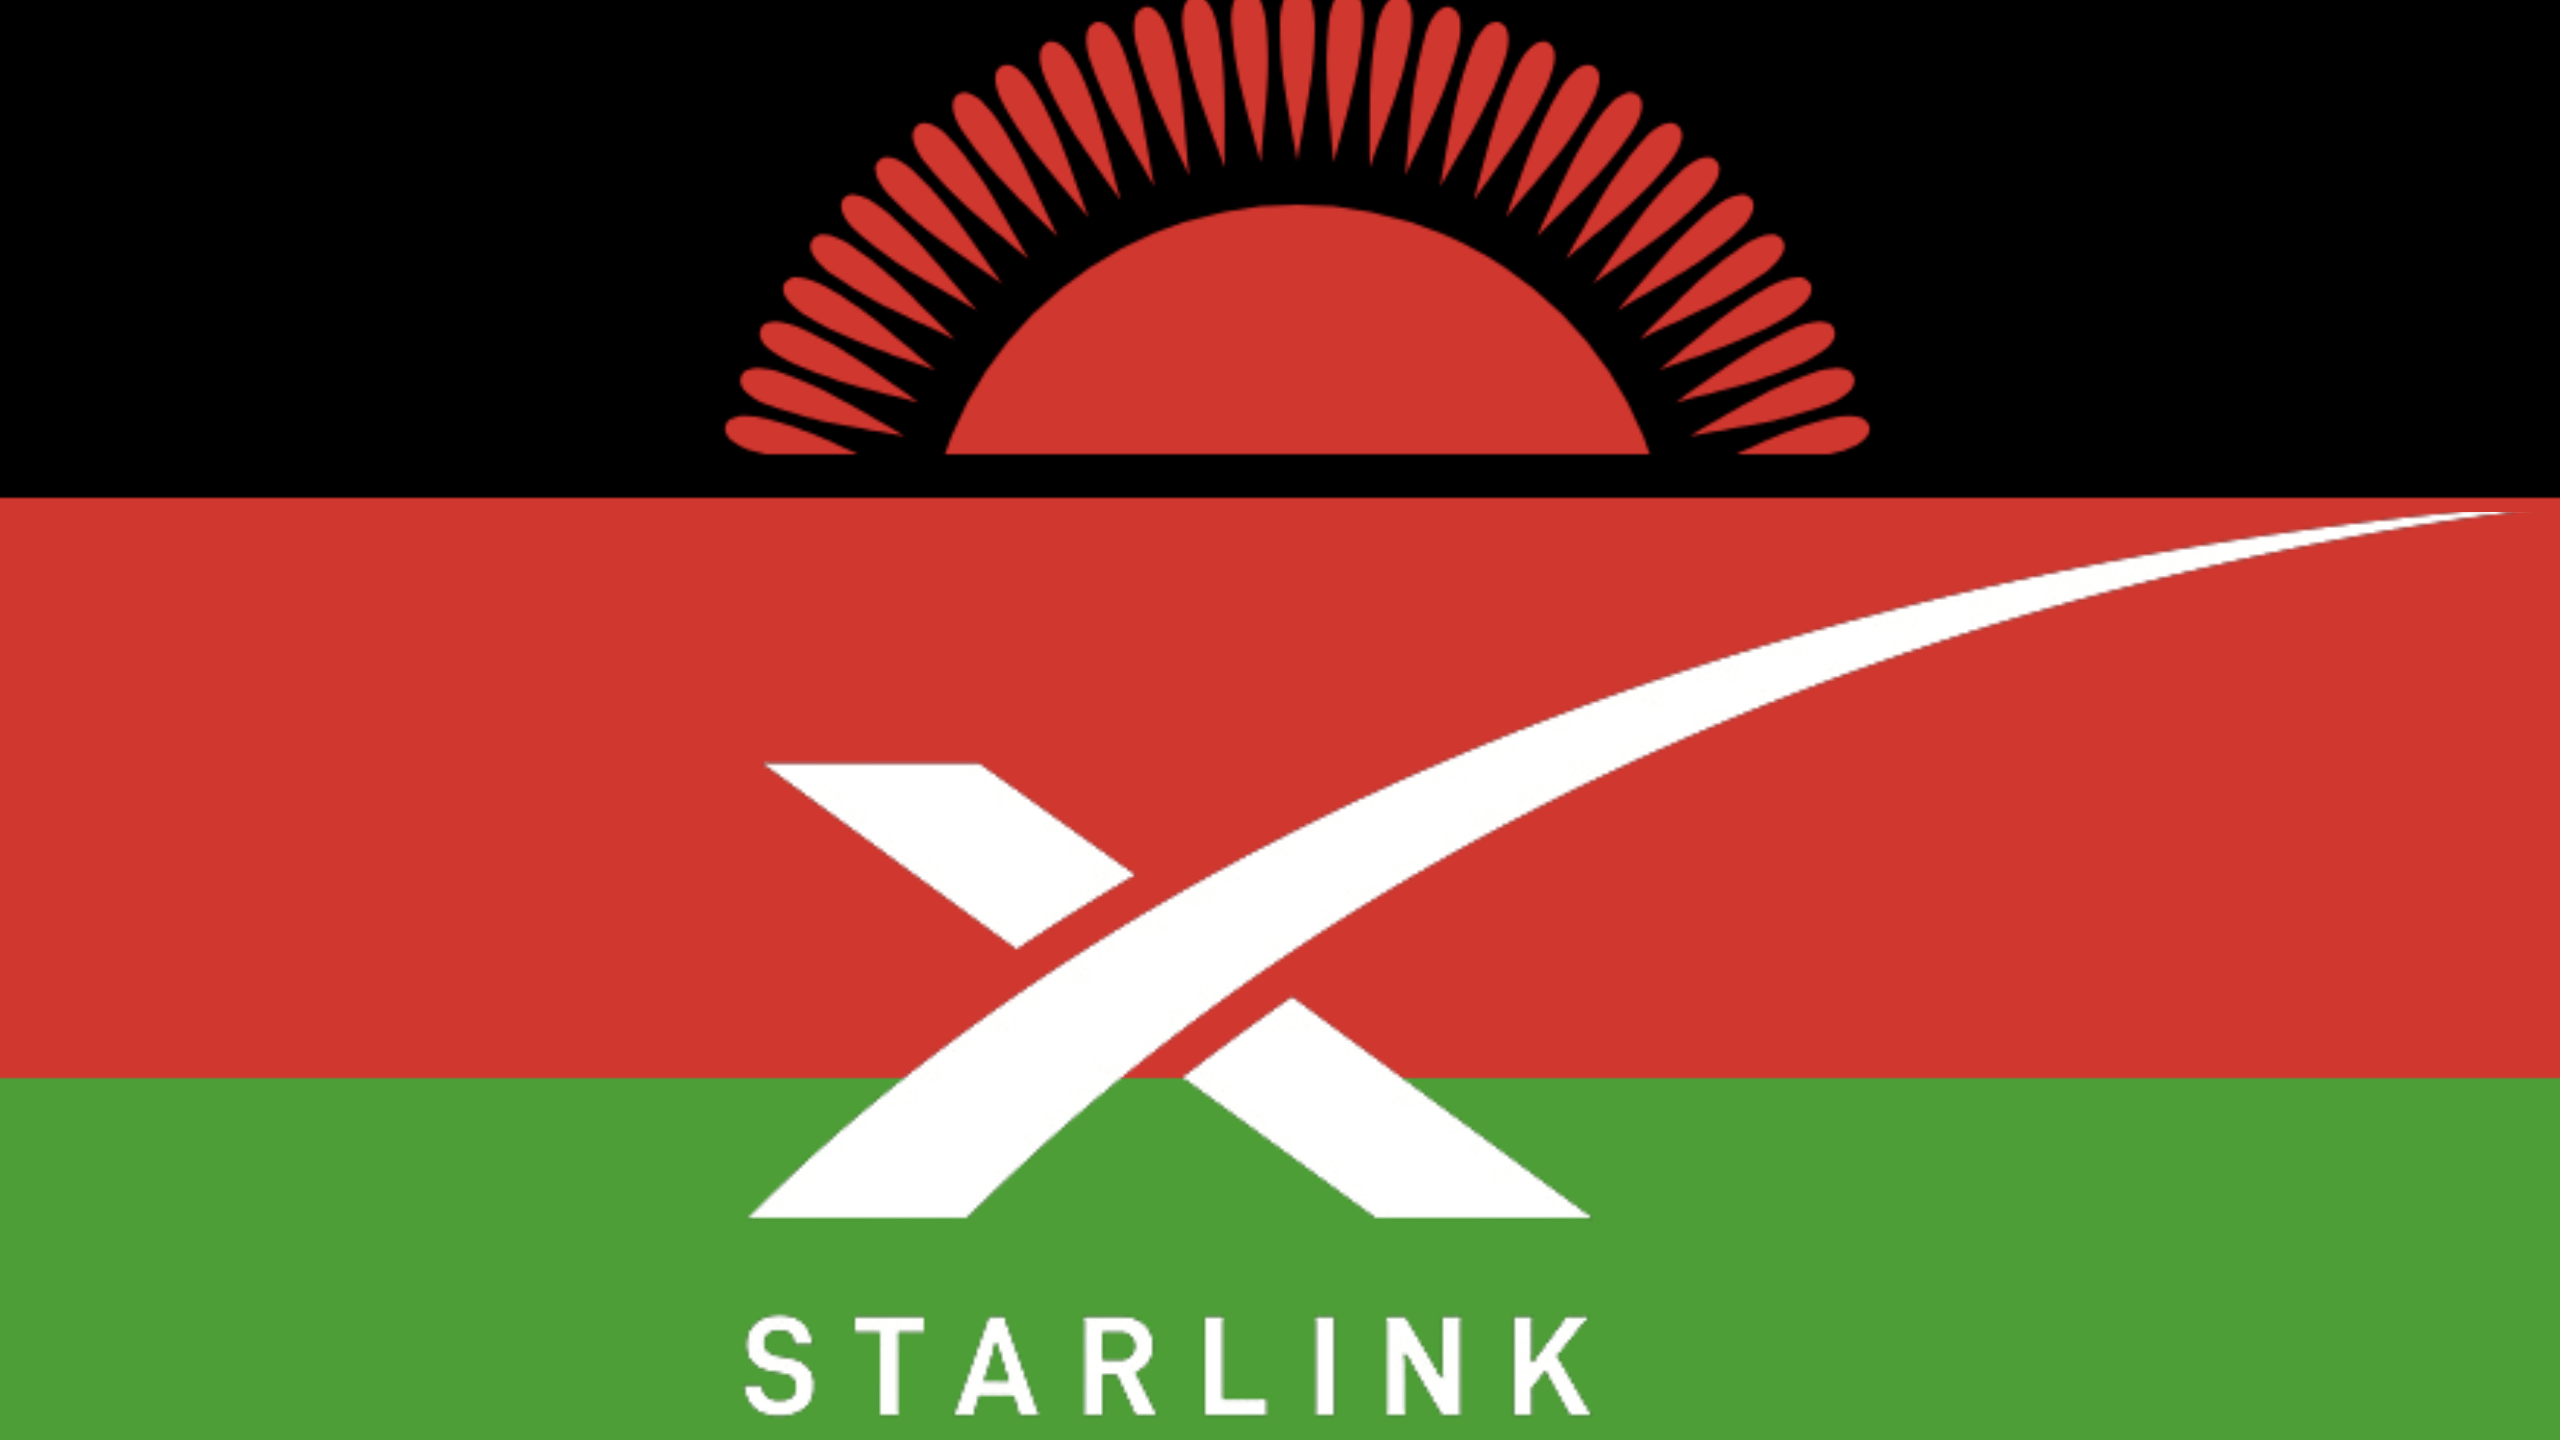 Starlink قادم إلى ملاوي ؛  مدير MACRA: “مرحبًا بكم في ملاوي ، Starlink”